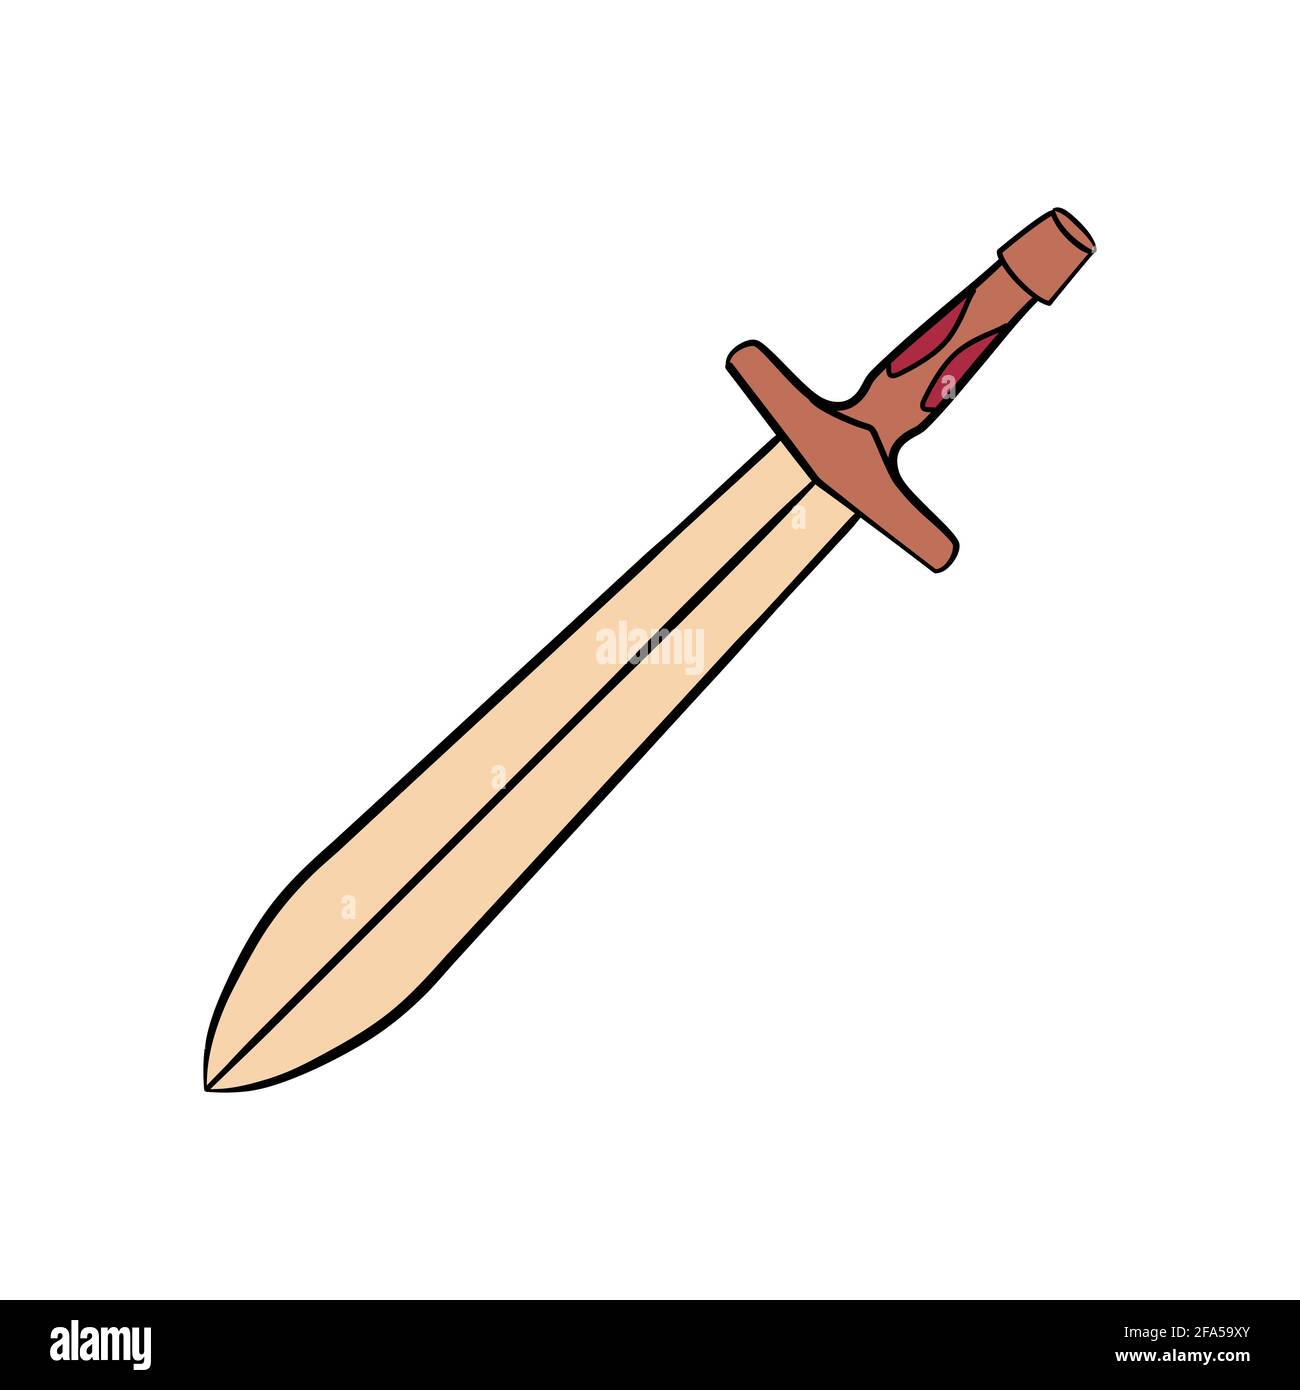 Xiphos, épée de la Grèce antique, isolé objet vectoriel sur fond blanc. Point d'archéologie grecque Illustration de Vecteur